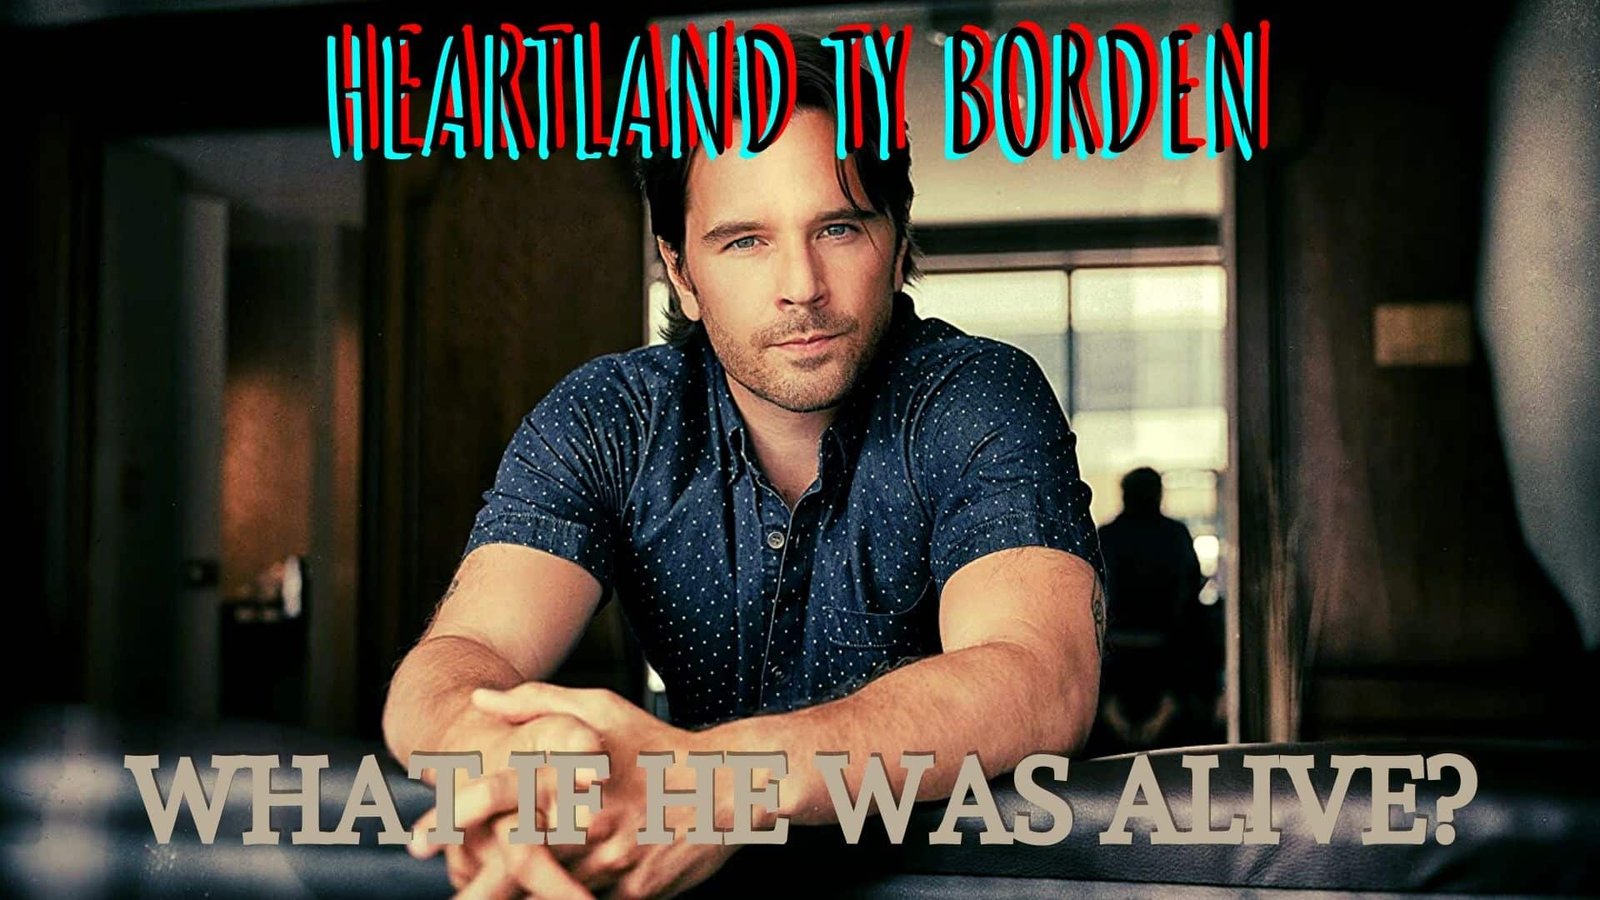 Heartland Ty Borden